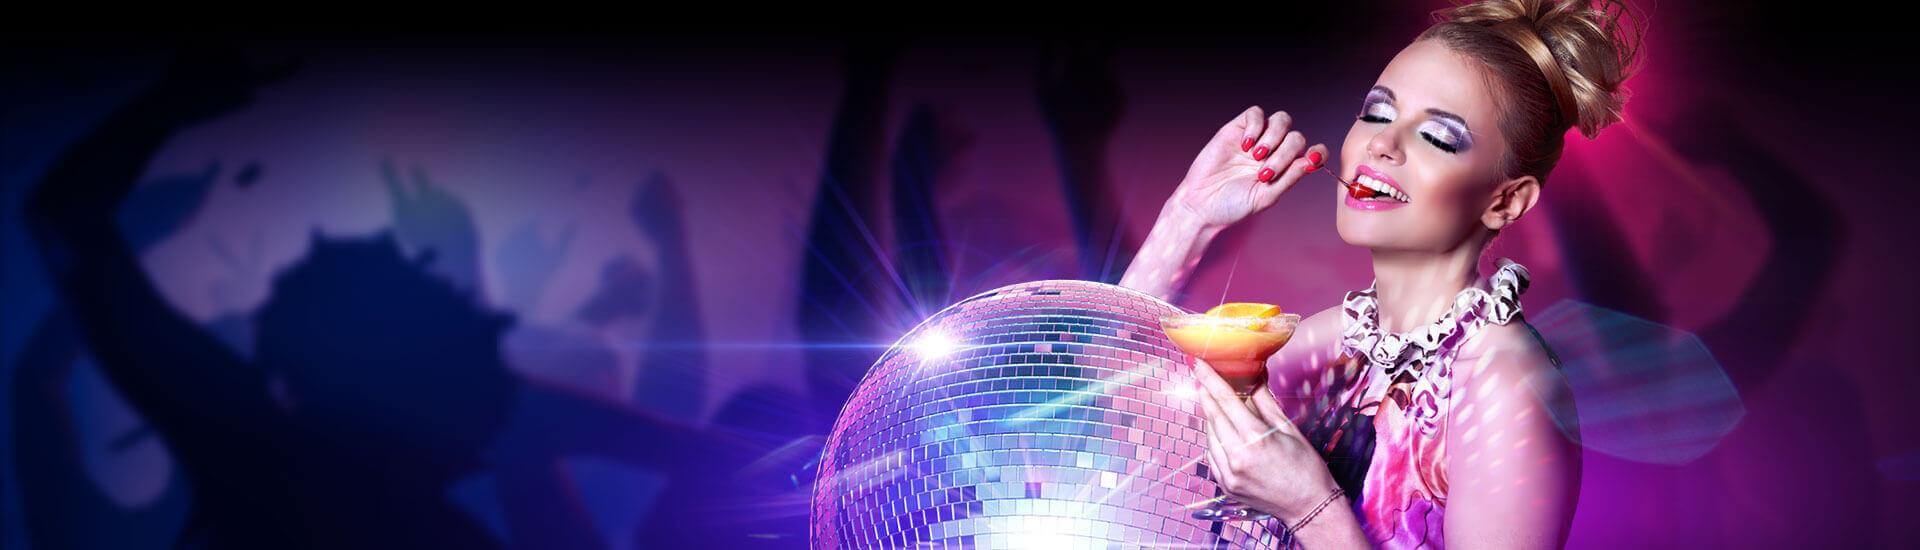 Glitterball-banner Casino Disco